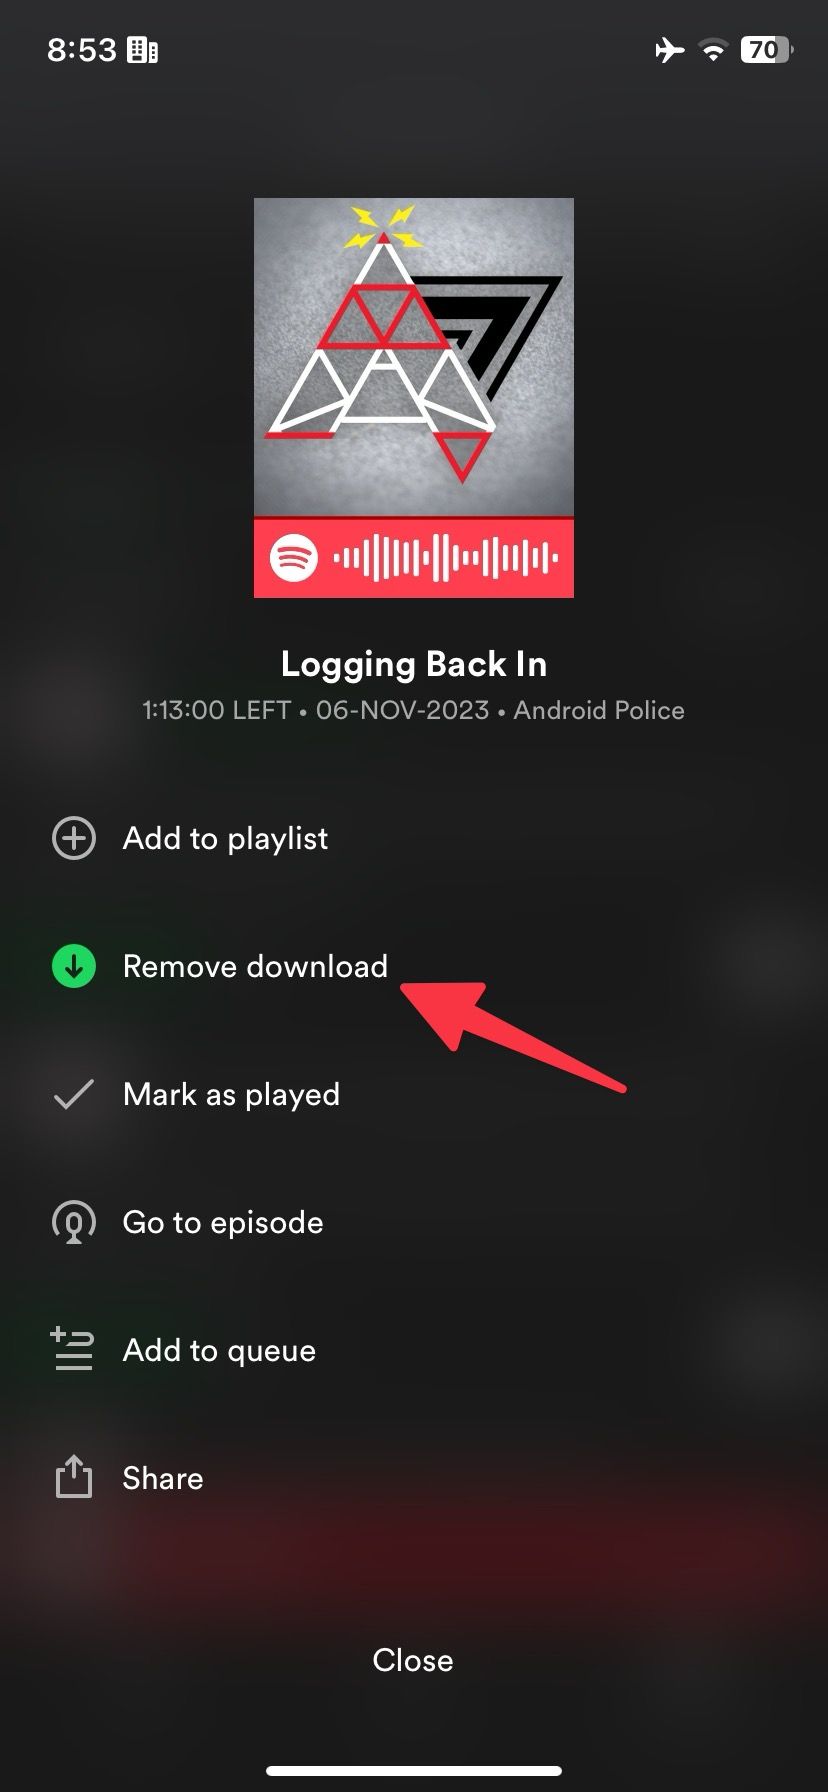 remover downloads de podcast no Spotify